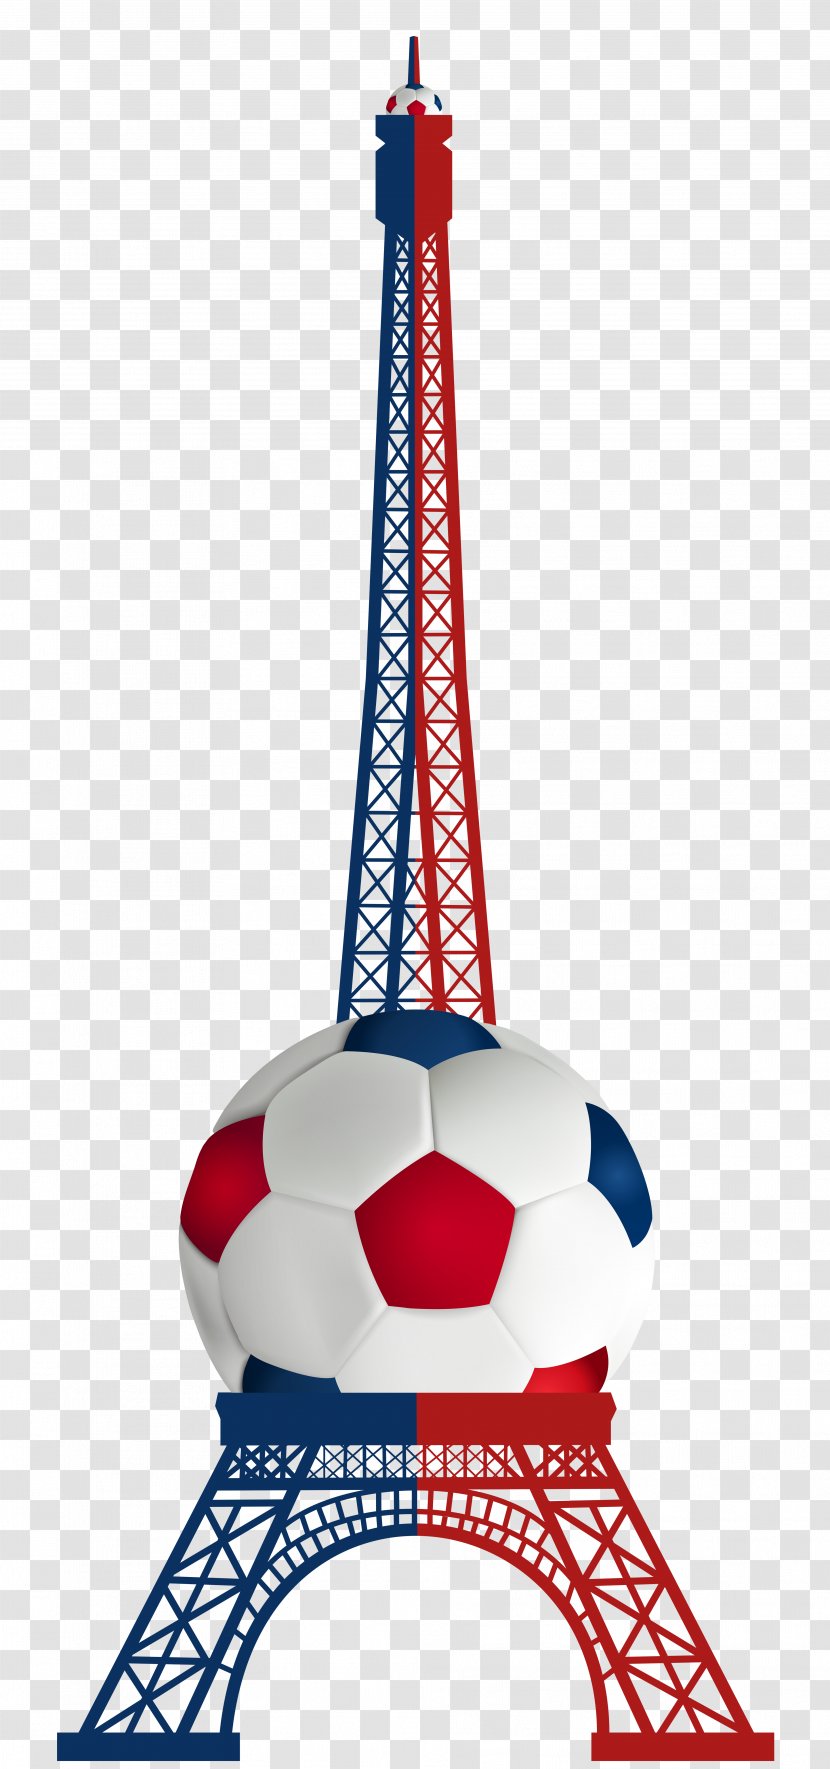 Eiffel Tower Drawing Sketch - Paris - Euro 2016 France Transparent Clip Art Image Transparent PNG